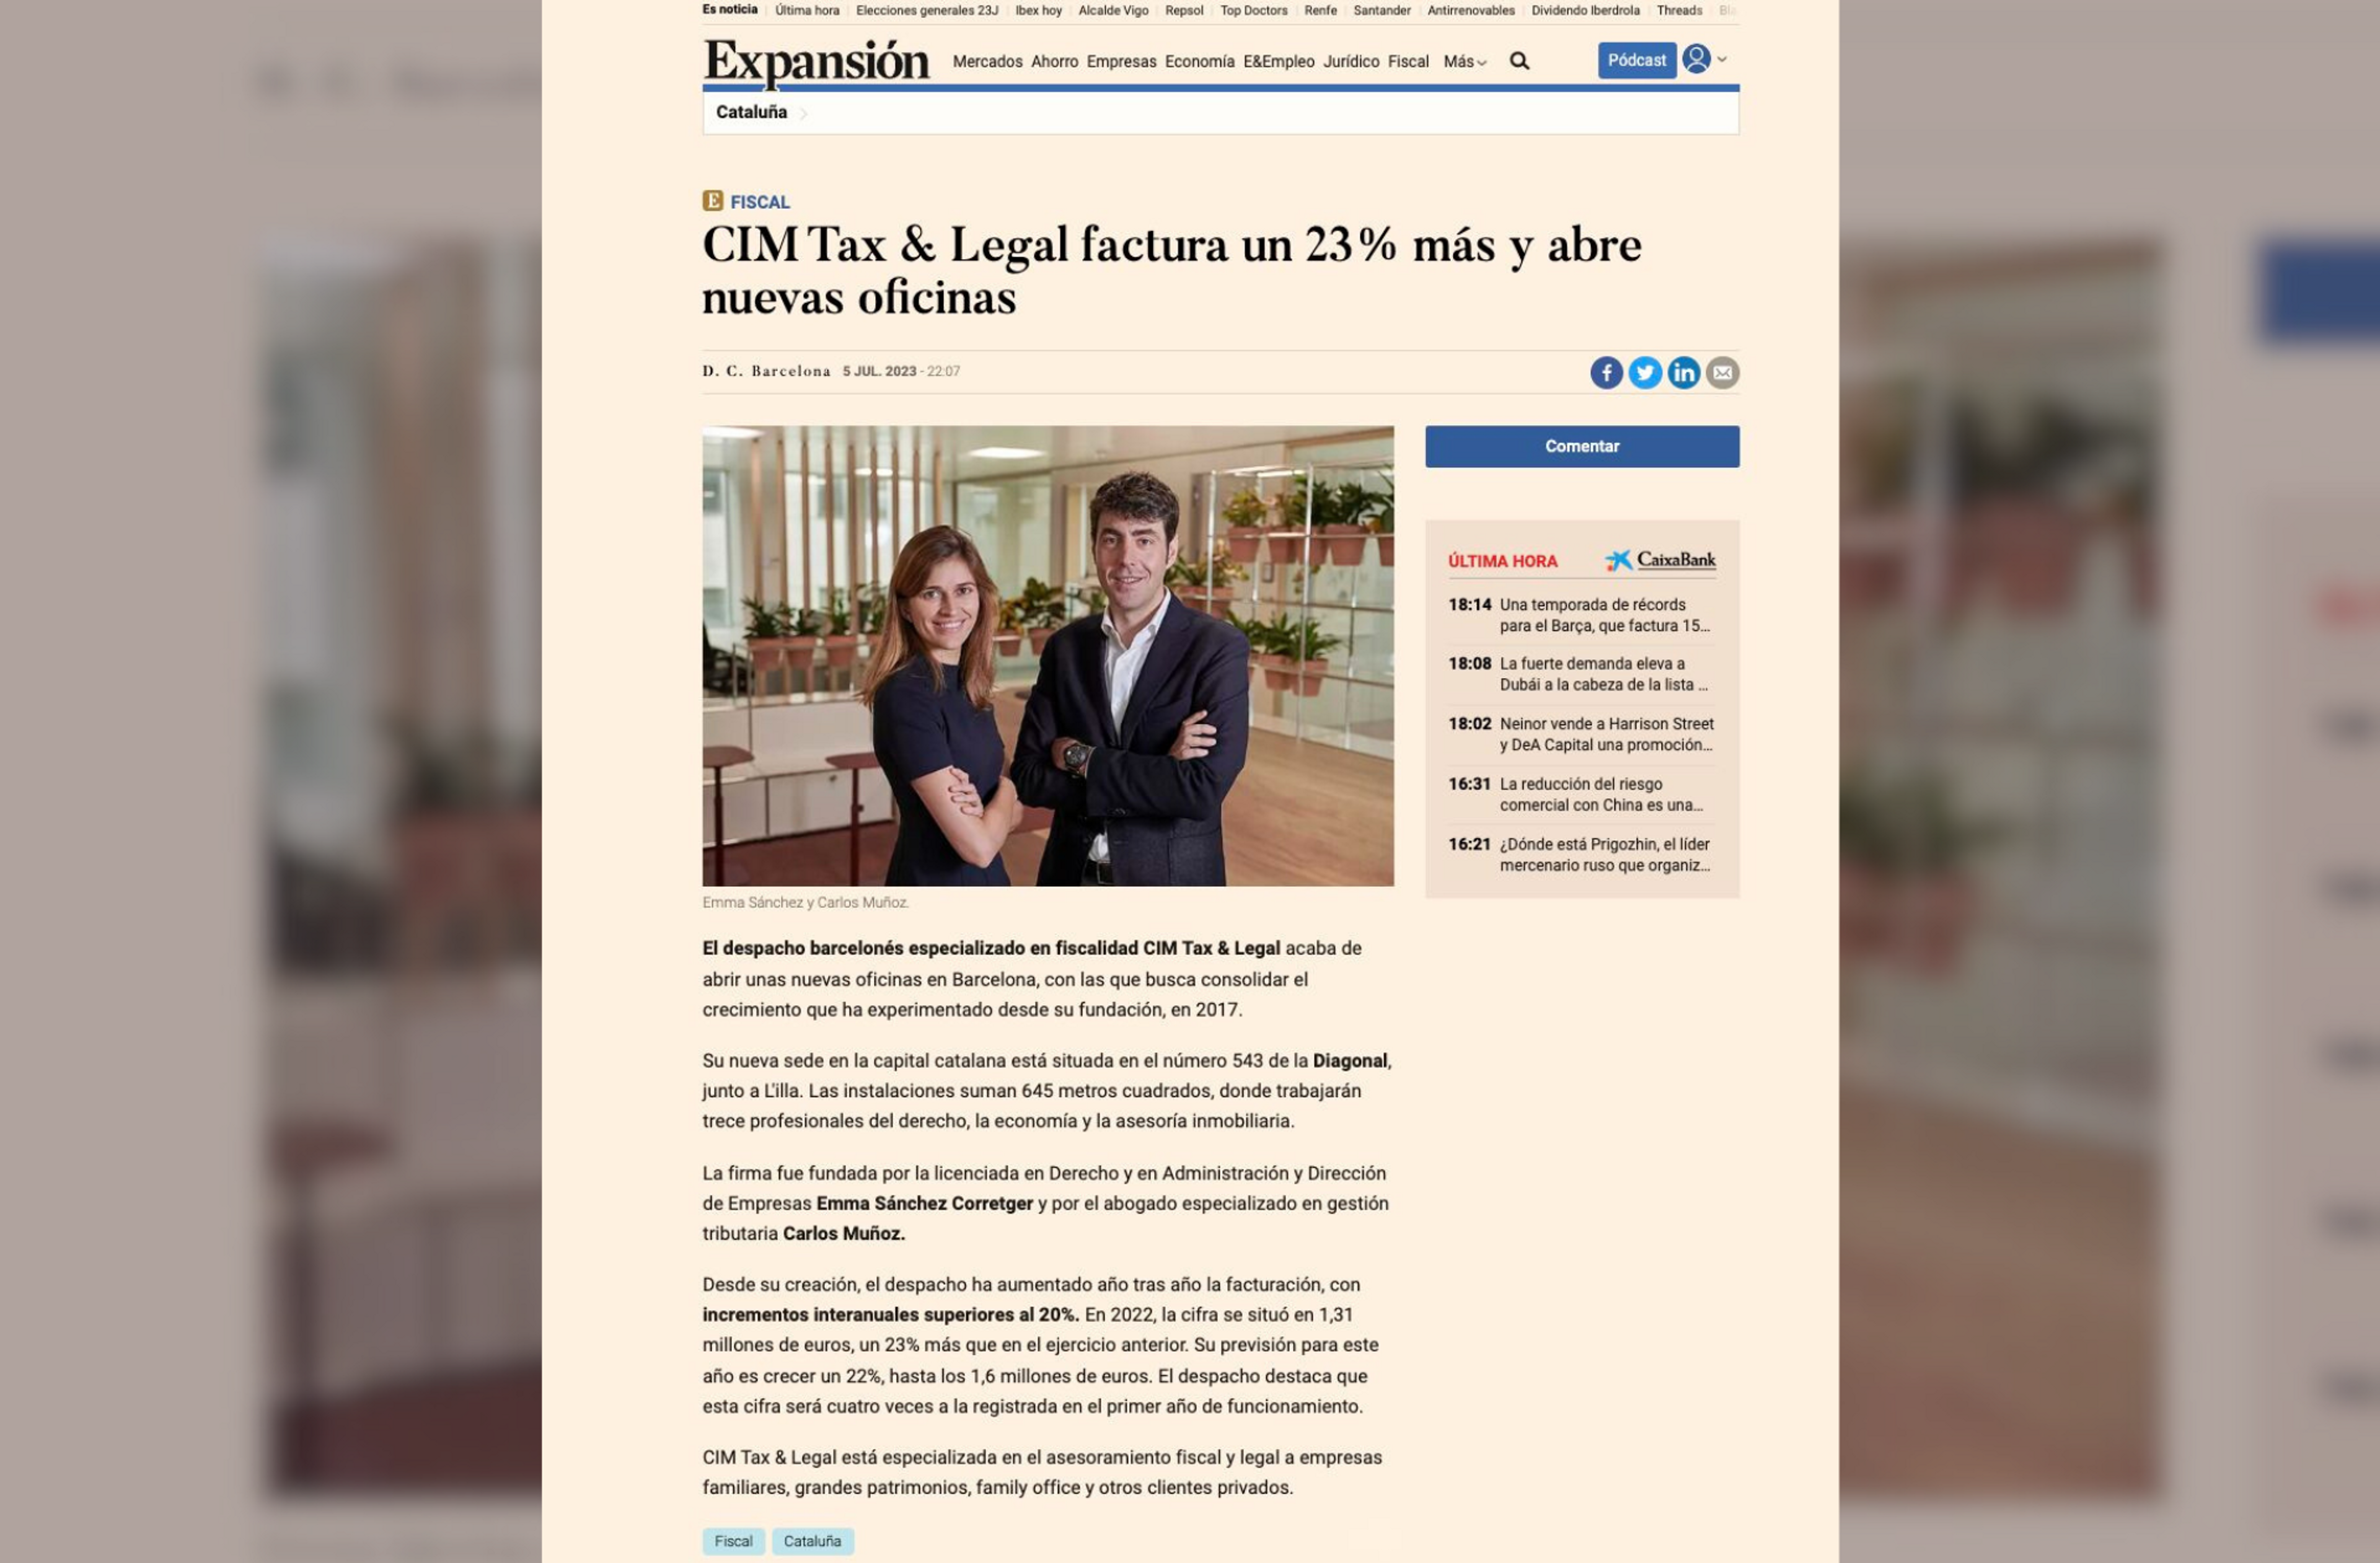 Cim tax & legal a Expansión